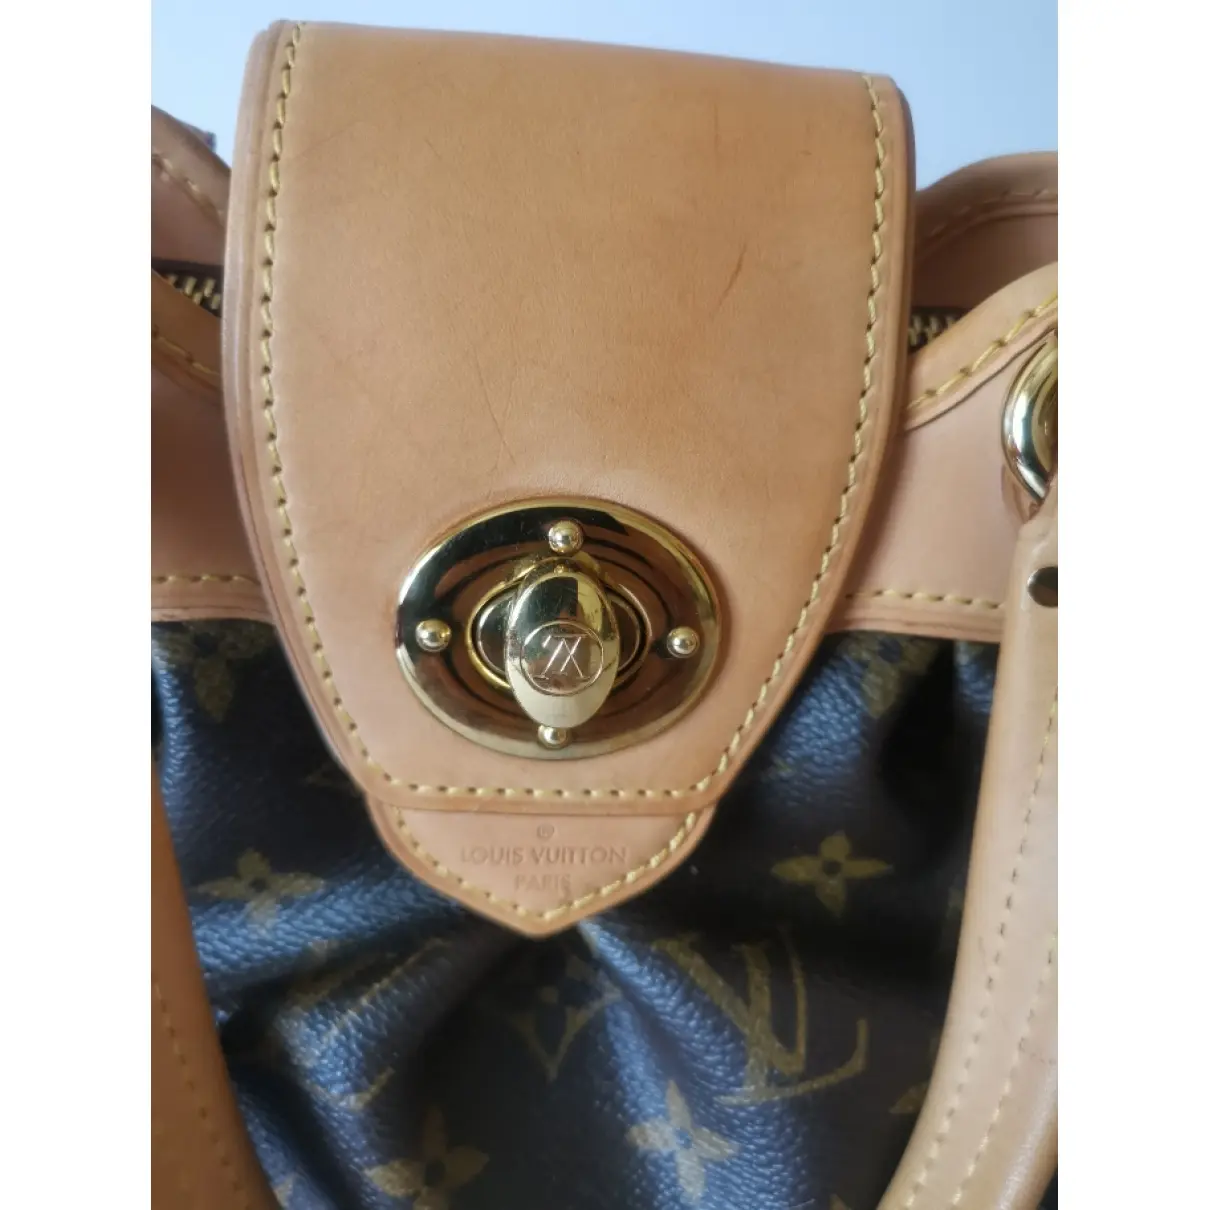 Buy Louis Vuitton Boetie cloth handbag online